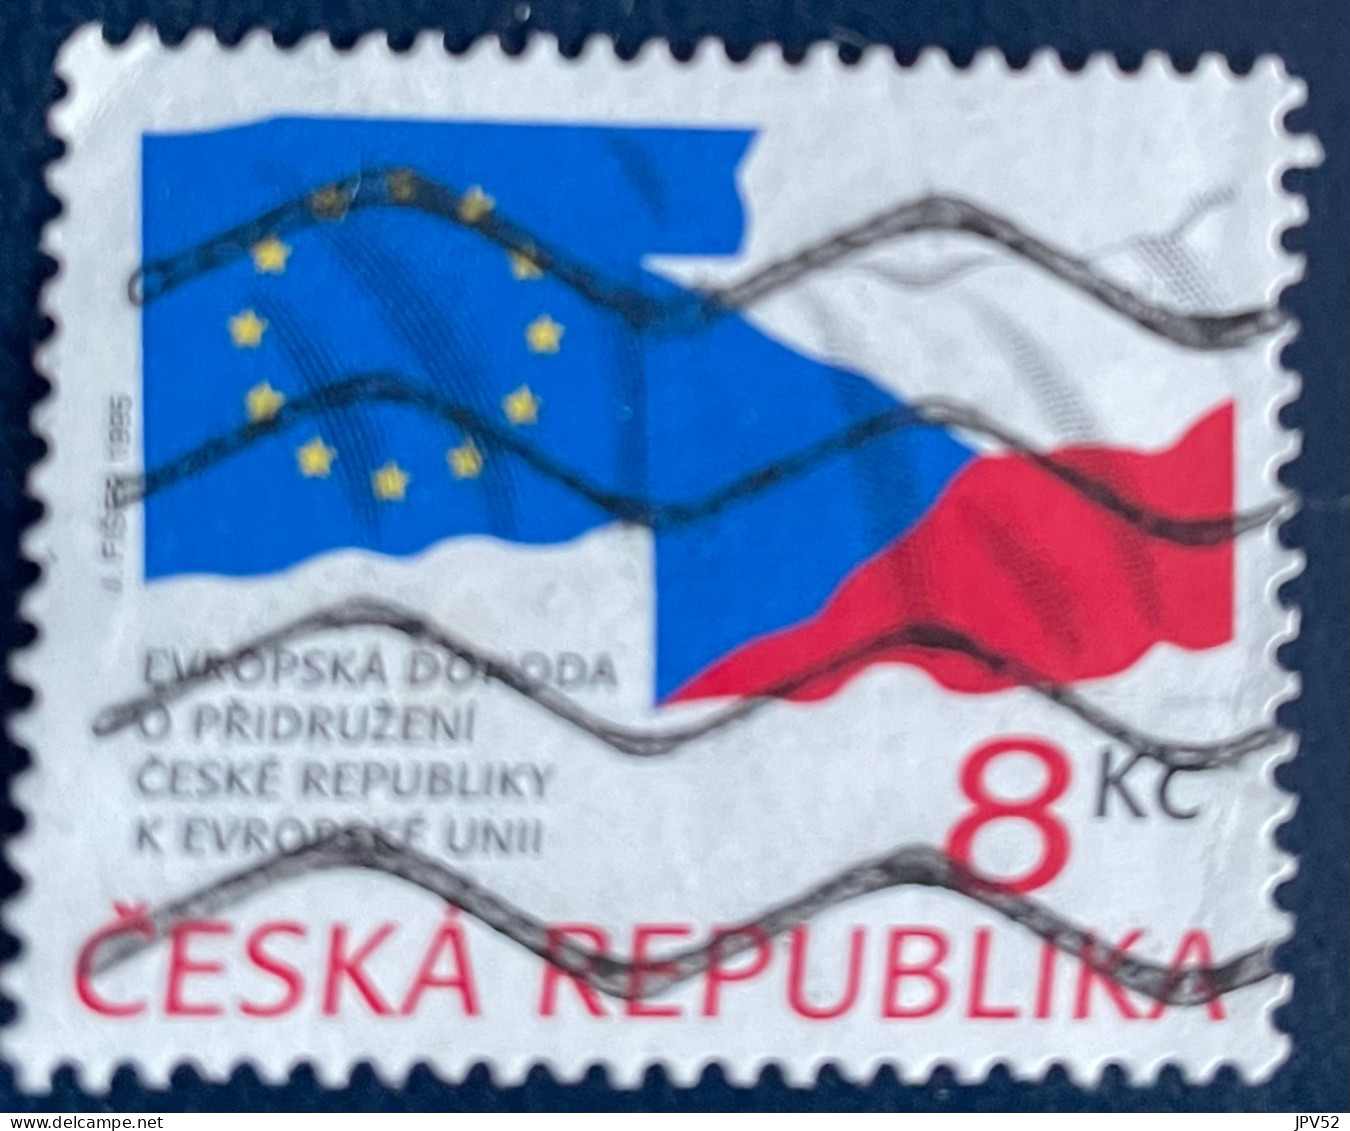 Ceska Republika - Tsjechië - C4/4 - 1995 - (°)used - Michel 62 - Tsjechië Lid Va EU - Oblitérés